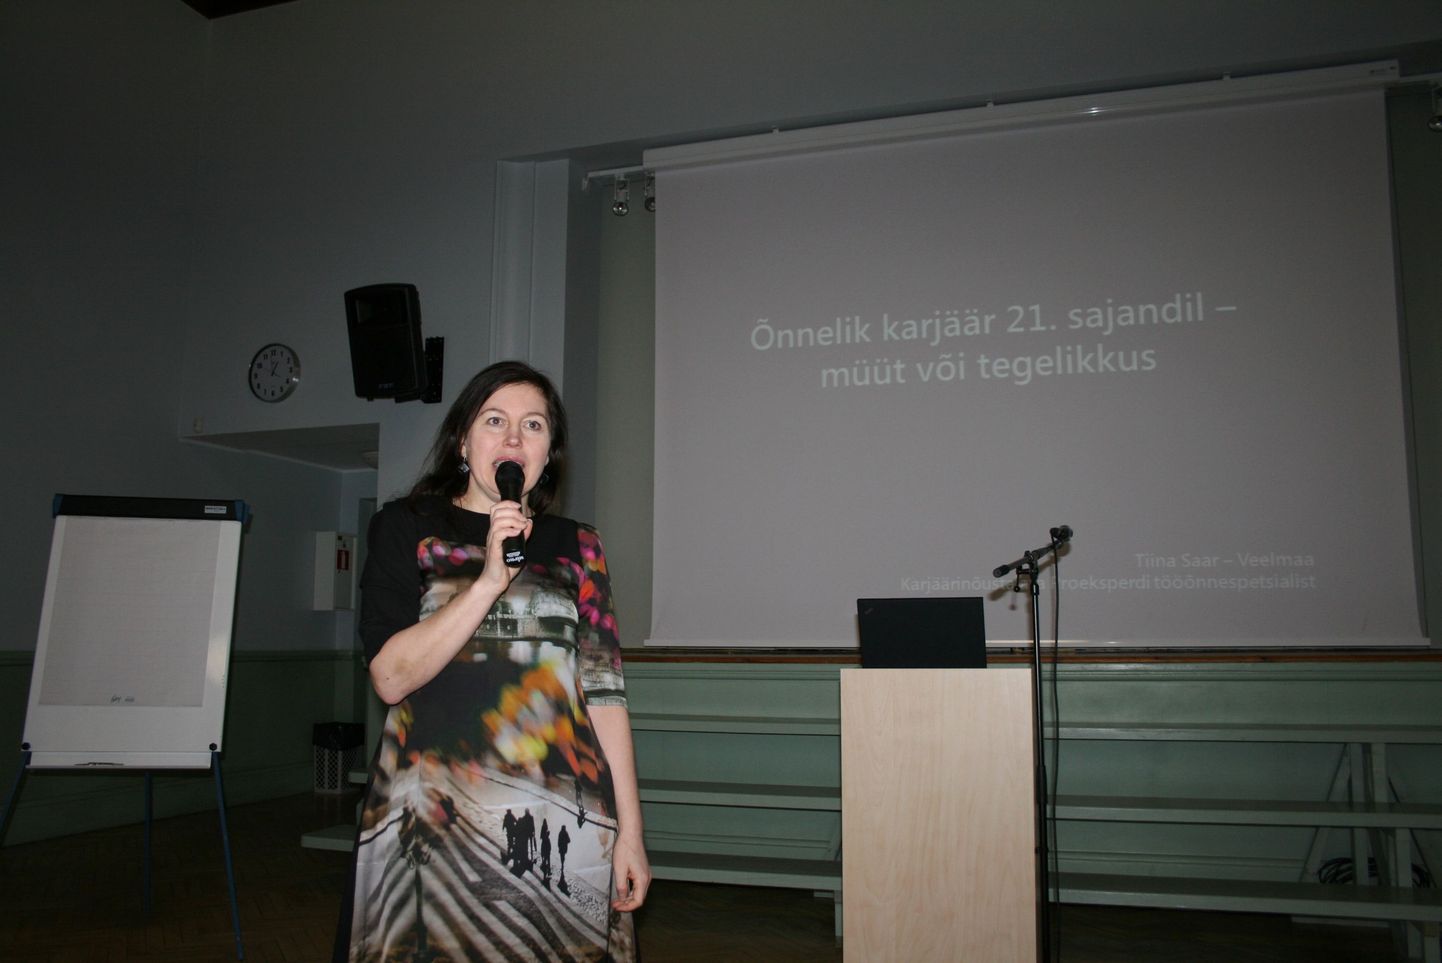 Pärnu ühisgümnaasiumis toimunud karjäärikonverentsi peaesineja oli koolitaja Tiina Saar-Veelmaa.